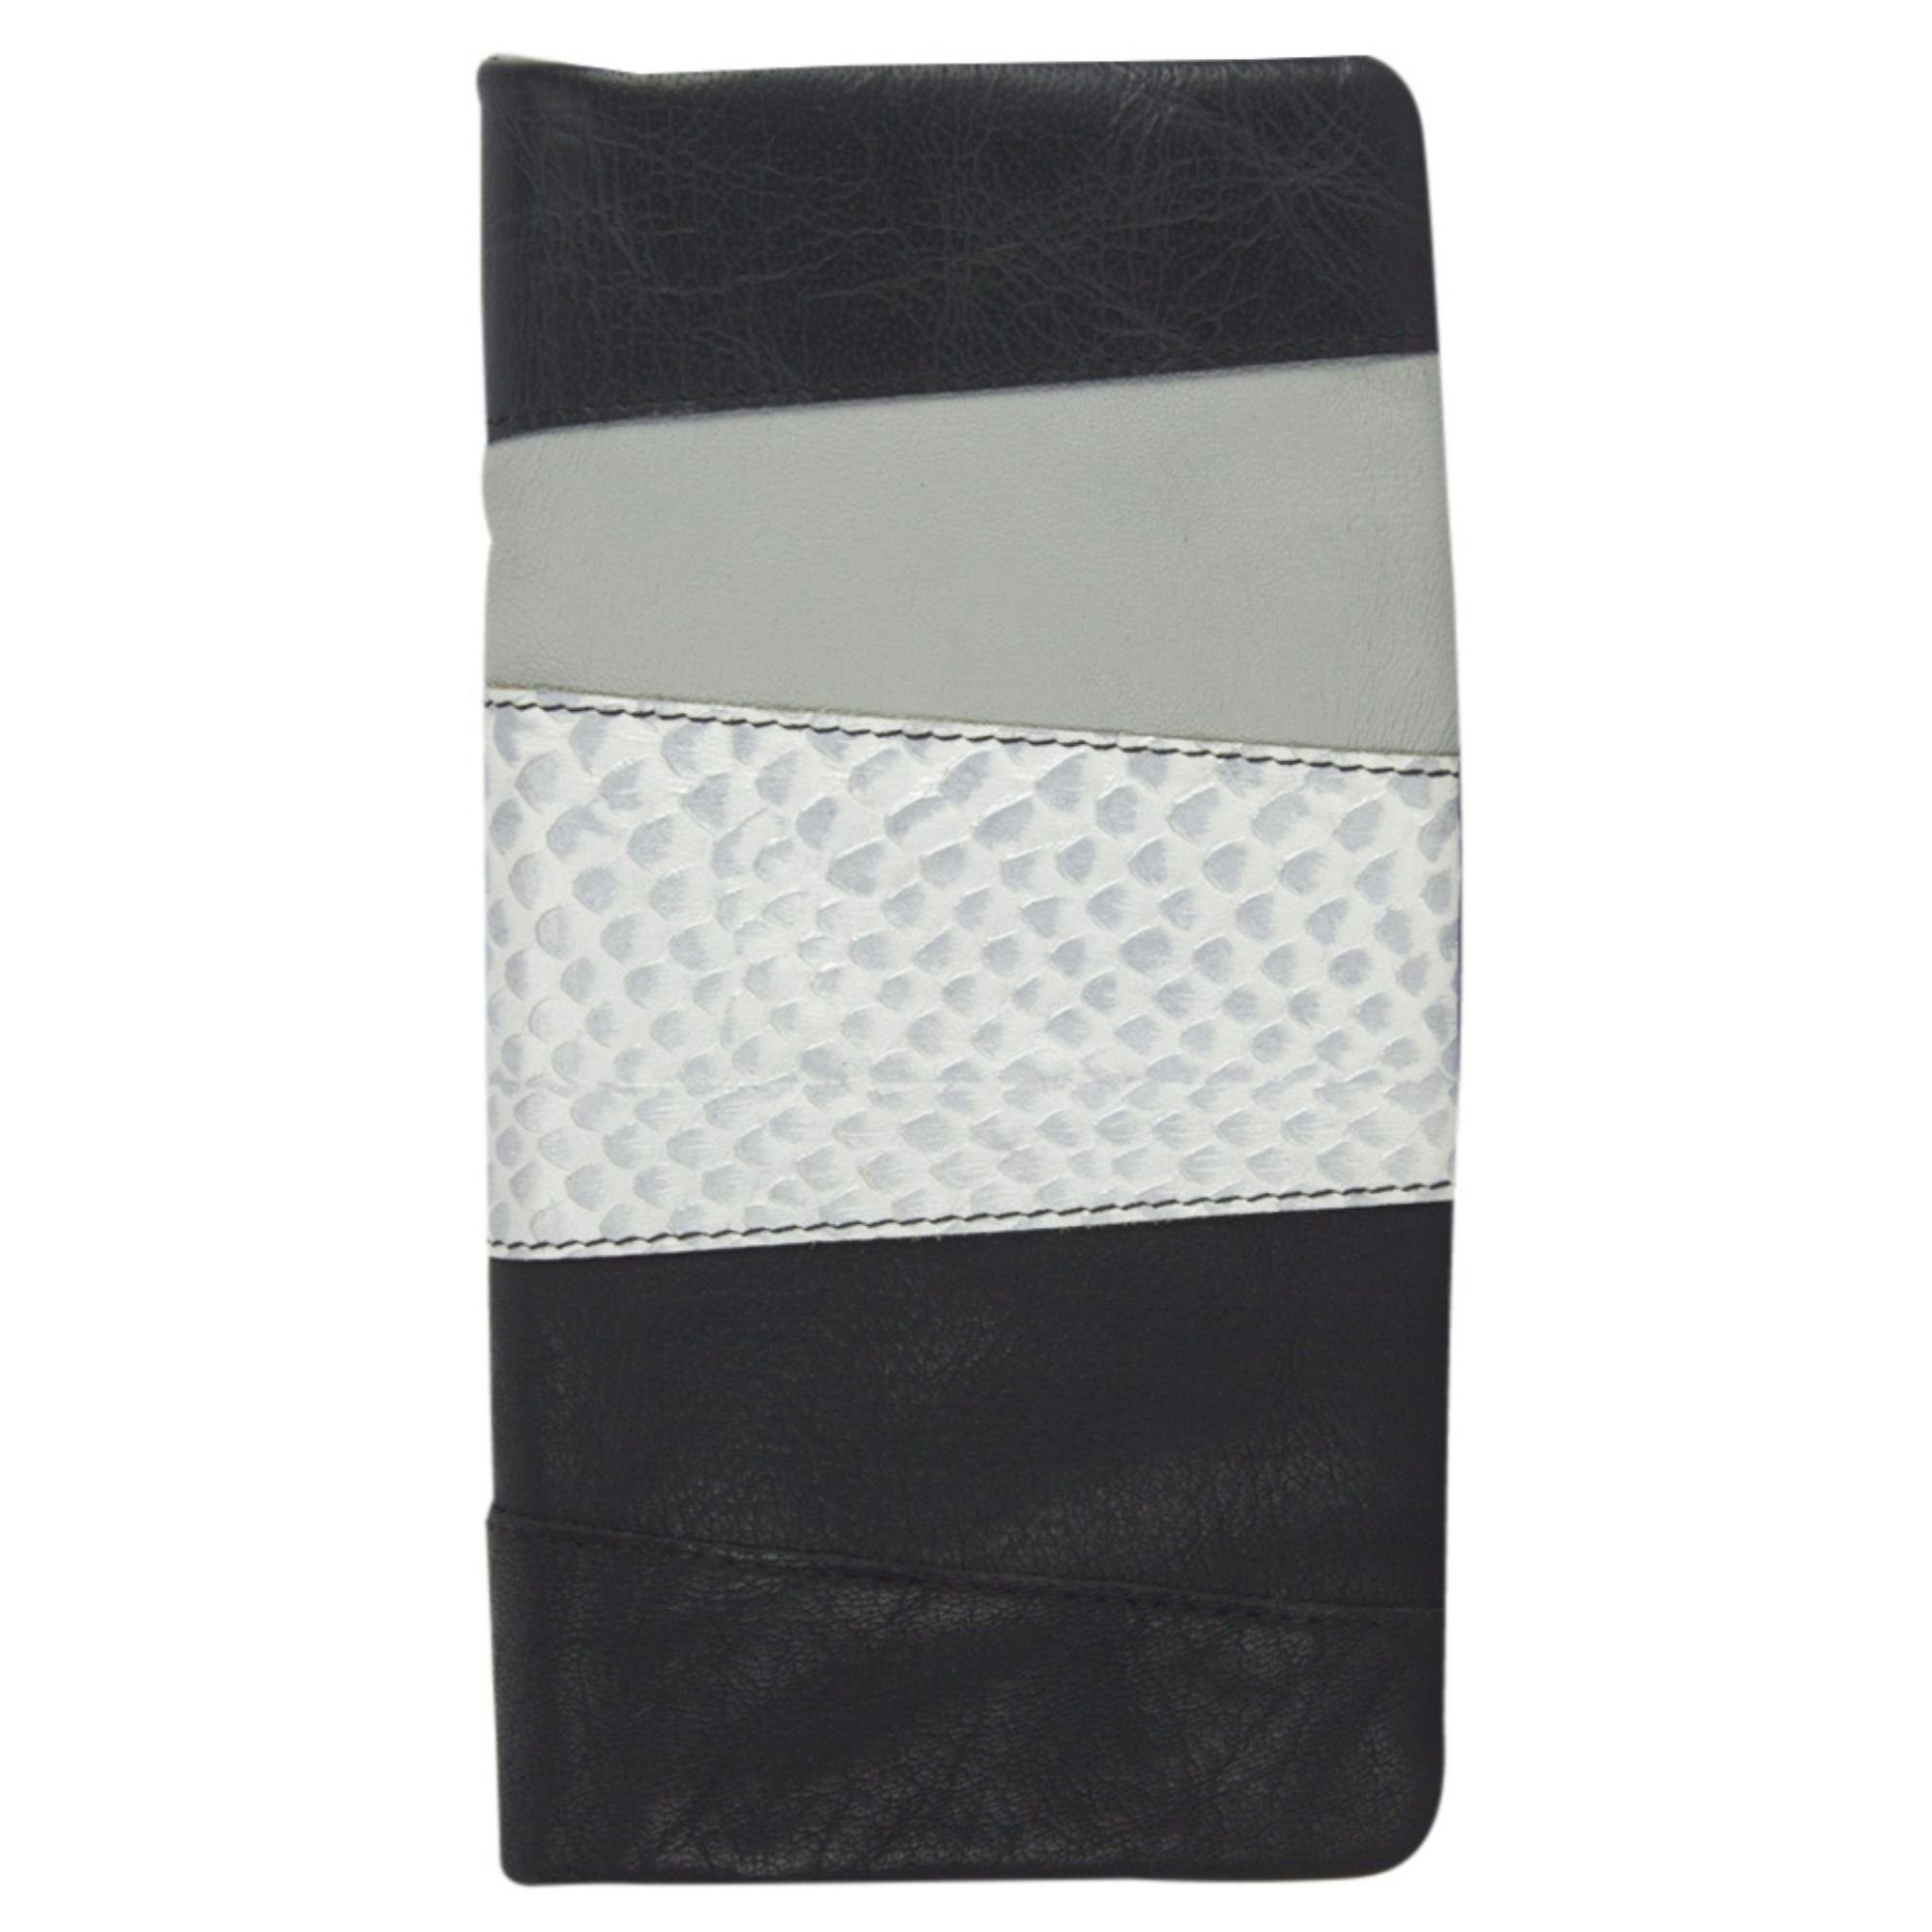 Sunsa Geldbörse Leder Geldbeutel große Brieftasche Portemonnaie, echt Leder, mit RFID-Schutz, Vintage Style, aus recycelten Lederresten grau/schwarz